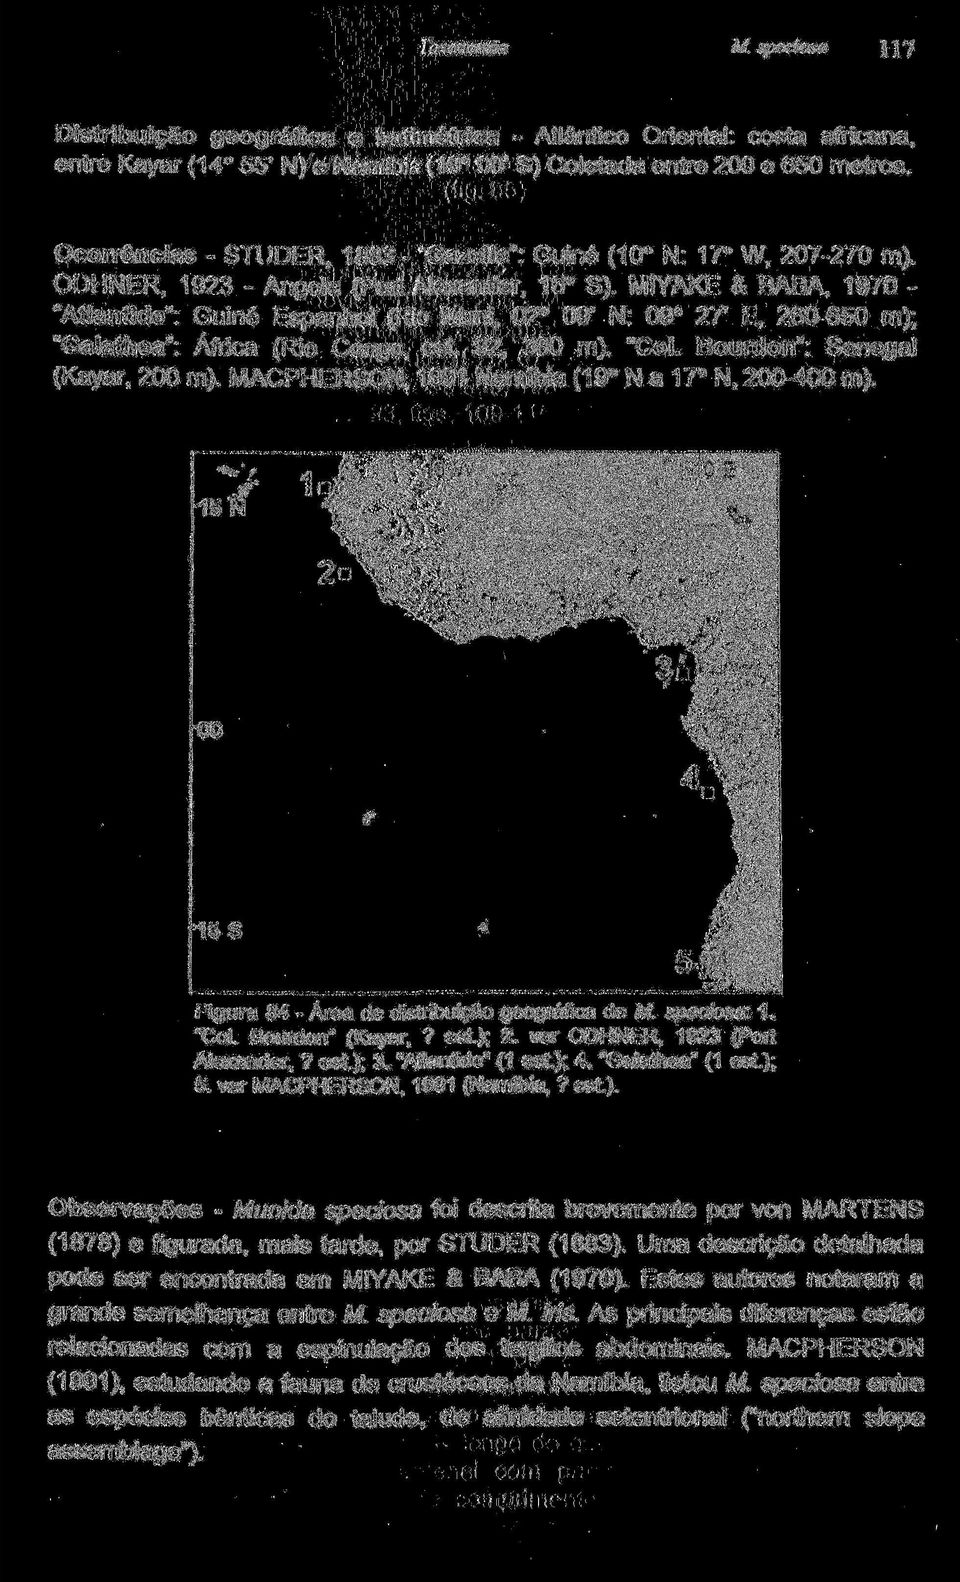 MIYAKE & BABA, 1970 "Atlantide": Guiné Espanhol (Rio Muni, 02 09' N: 09 27' E, 260-650 m); "Galathea": África (Rio Congo, est. 92, 380 m). "Col. Bourdon": Senegal (Kayar, 200 m).